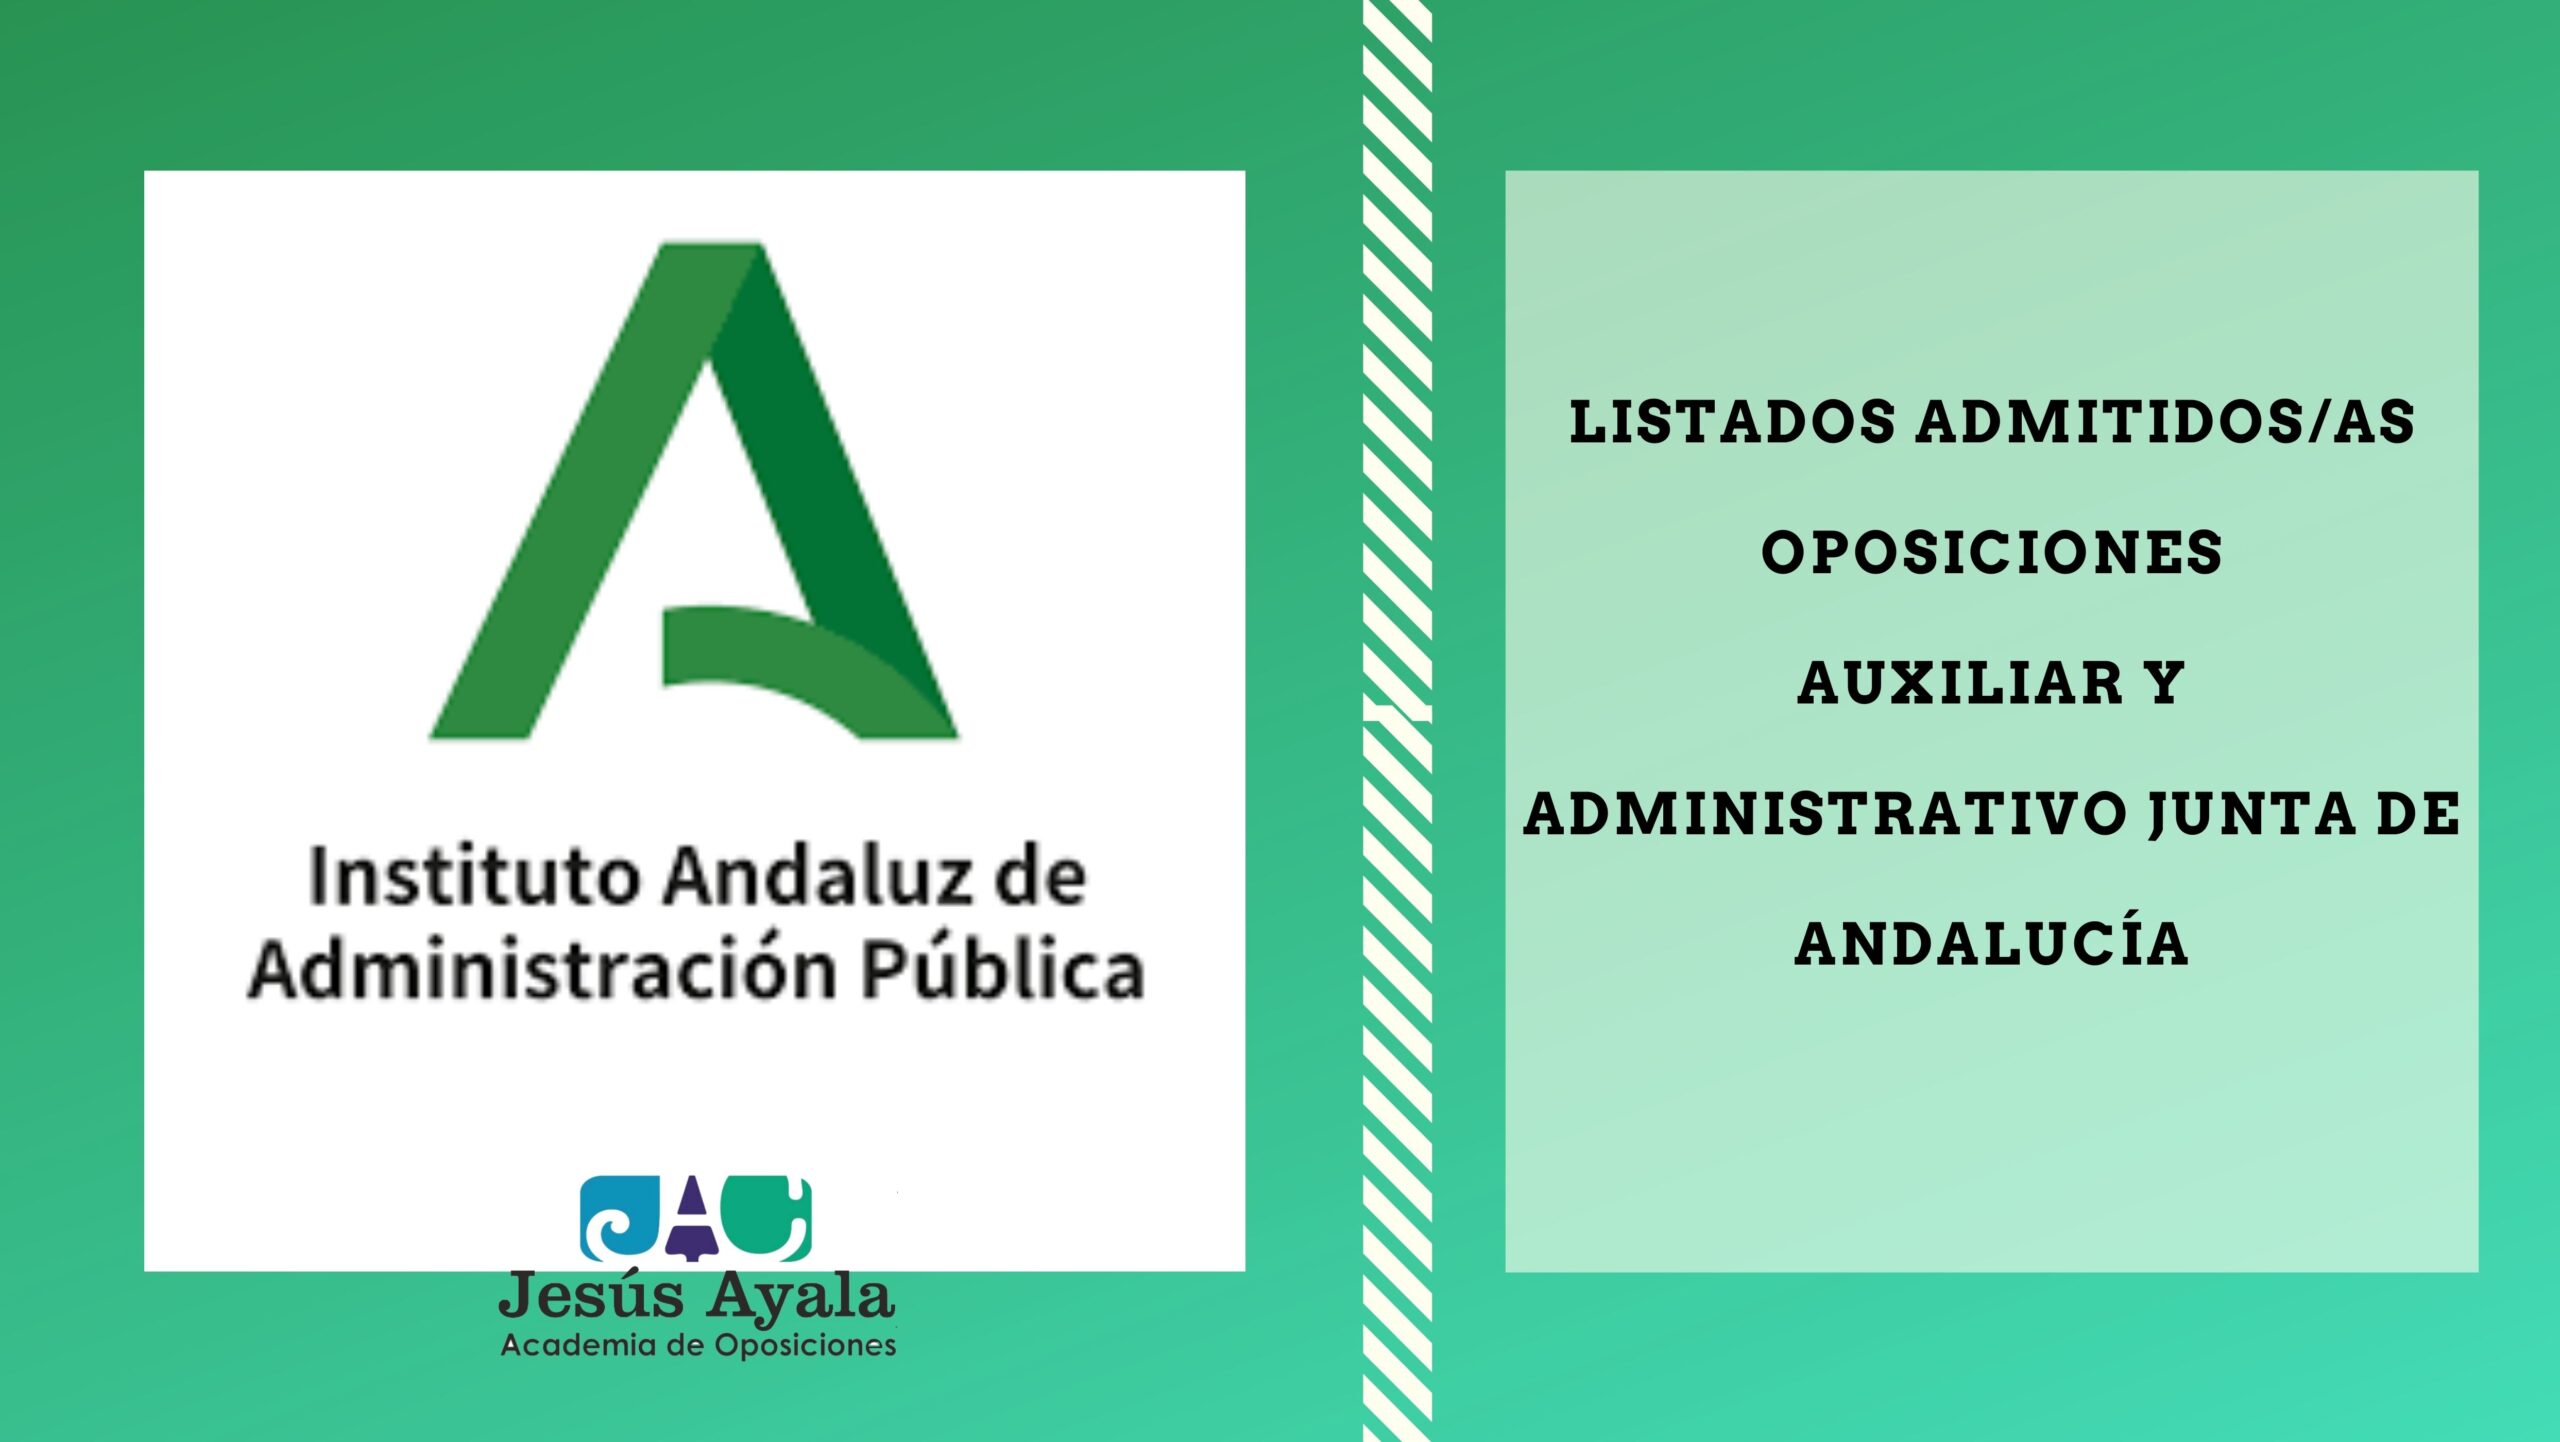 Agarrar camión Barry Publicadas listas admitidos/as Auxiliar y Administrativo Junta de Andalucía  - Academia de Oposiciones Jesús Ayala